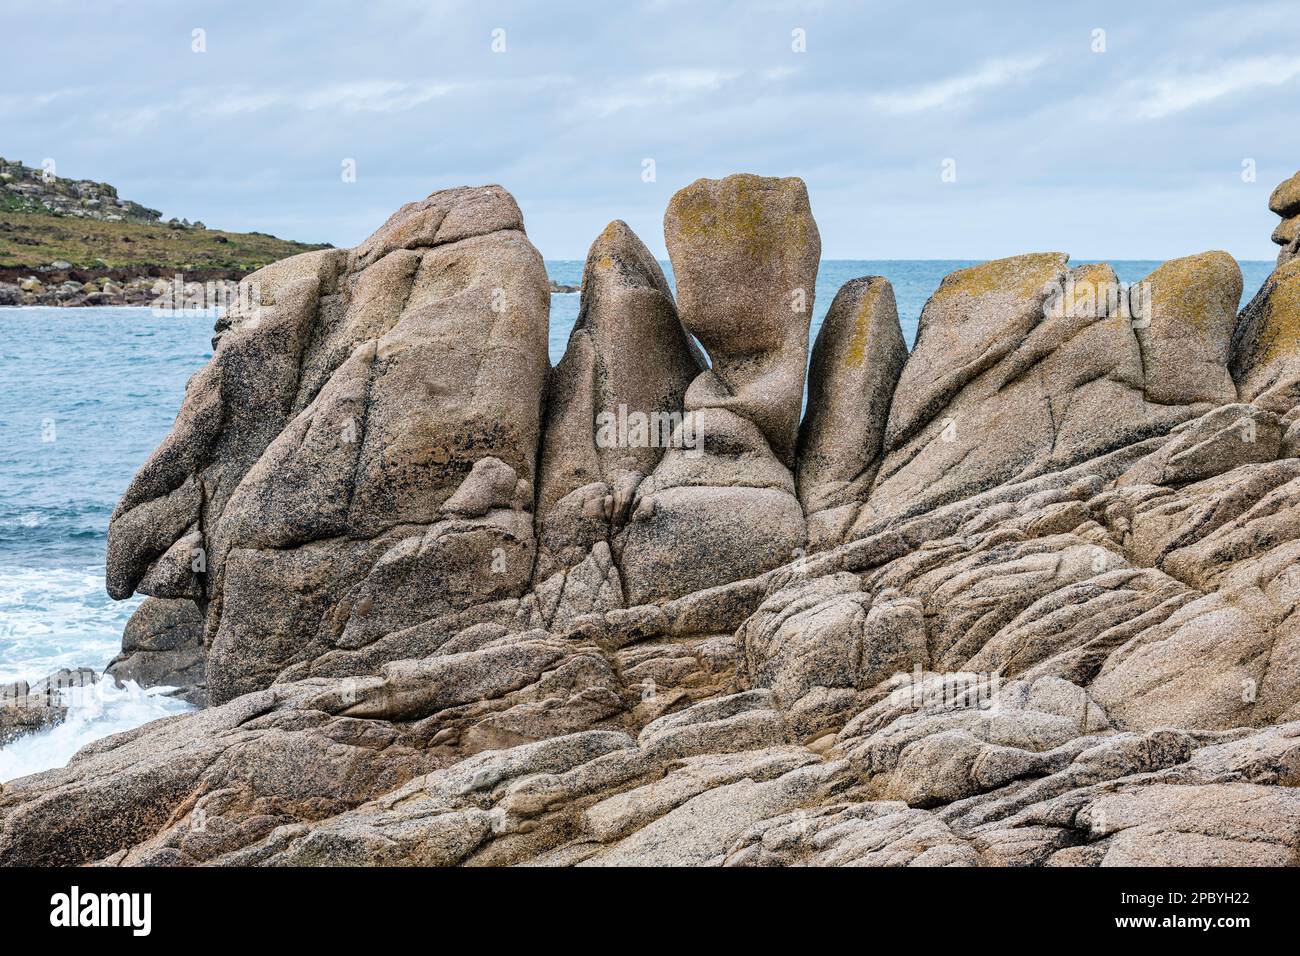 Un rocher ressemblant à un visage humain grotesque sur l'île de Bryher, dans les îles de Scilly, en Cornouailles, au Royaume-Uni Banque D'Images